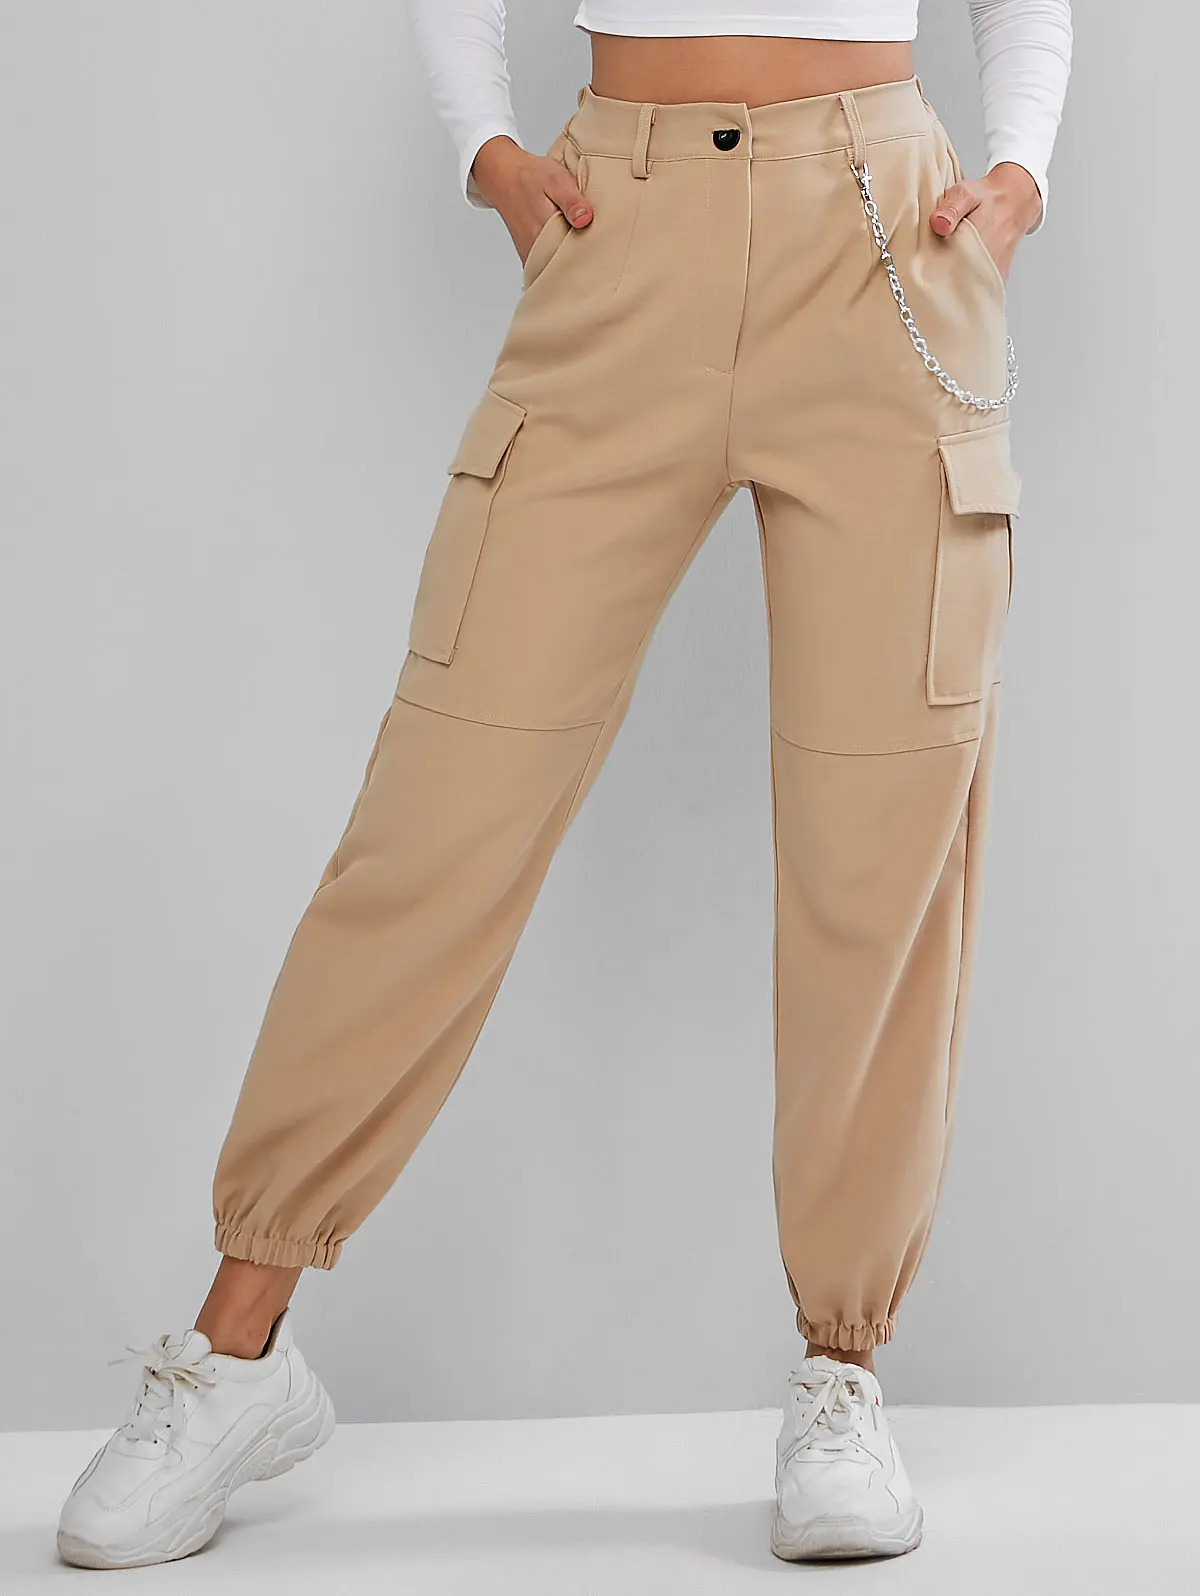 ZAFUL штаны для бега с цепочкой и карманами, высокая талия, одноцветные женские штаны с высокой талией, Осенние уличные штаны, популярные штаны - Цвет: Light Khaki